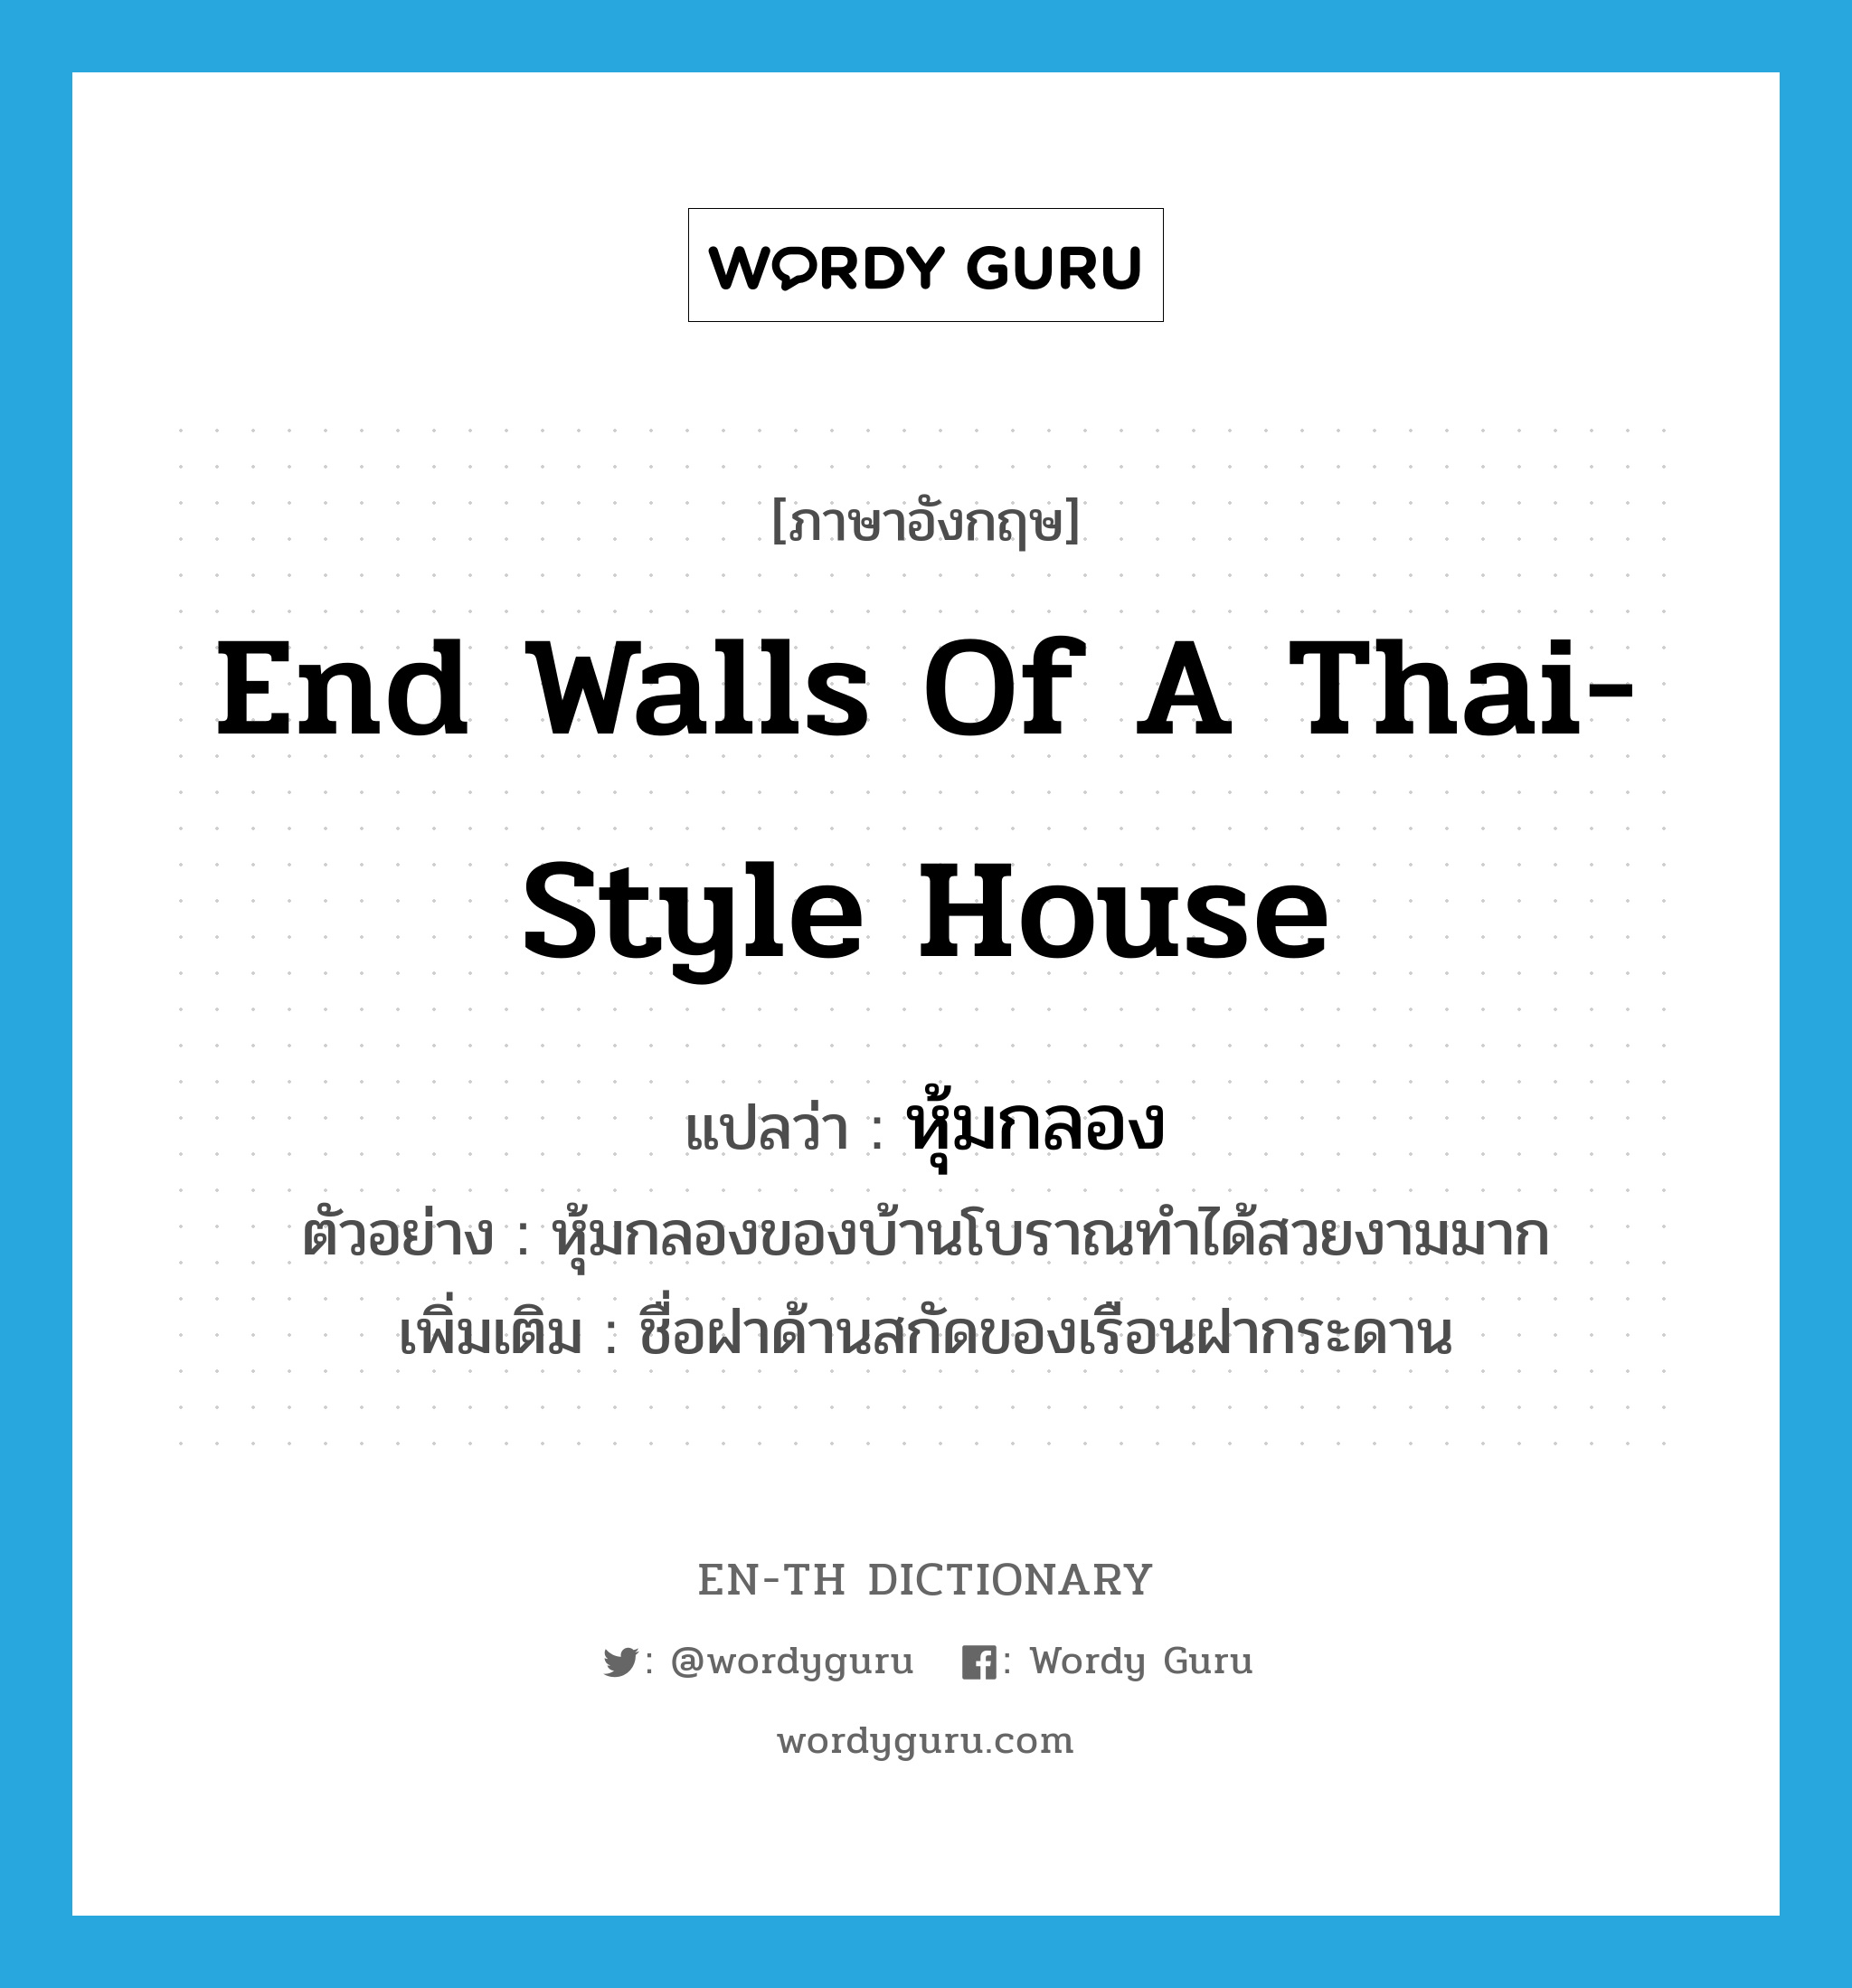 หุ้มกลอง ภาษาอังกฤษ?, คำศัพท์ภาษาอังกฤษ หุ้มกลอง แปลว่า end walls of a Thai-style house ประเภท N ตัวอย่าง หุ้มกลองของบ้านโบราณทำได้สวยงามมาก เพิ่มเติม ชื่อฝาด้านสกัดของเรือนฝากระดาน หมวด N